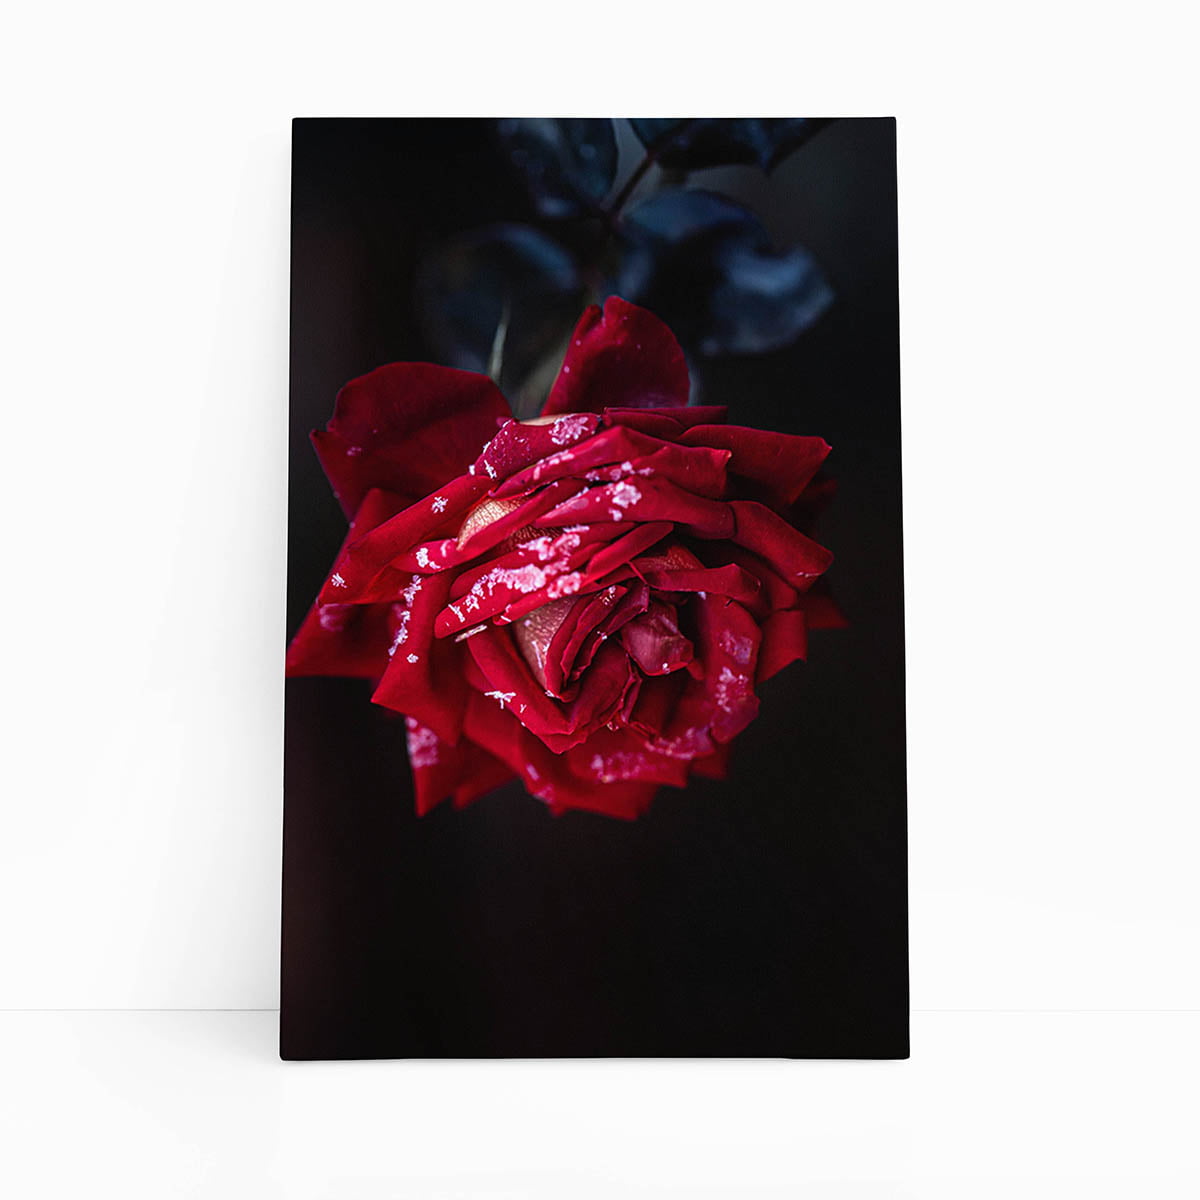 Quadro Rosa Vermelha com Orvalho Fotografia Canvas